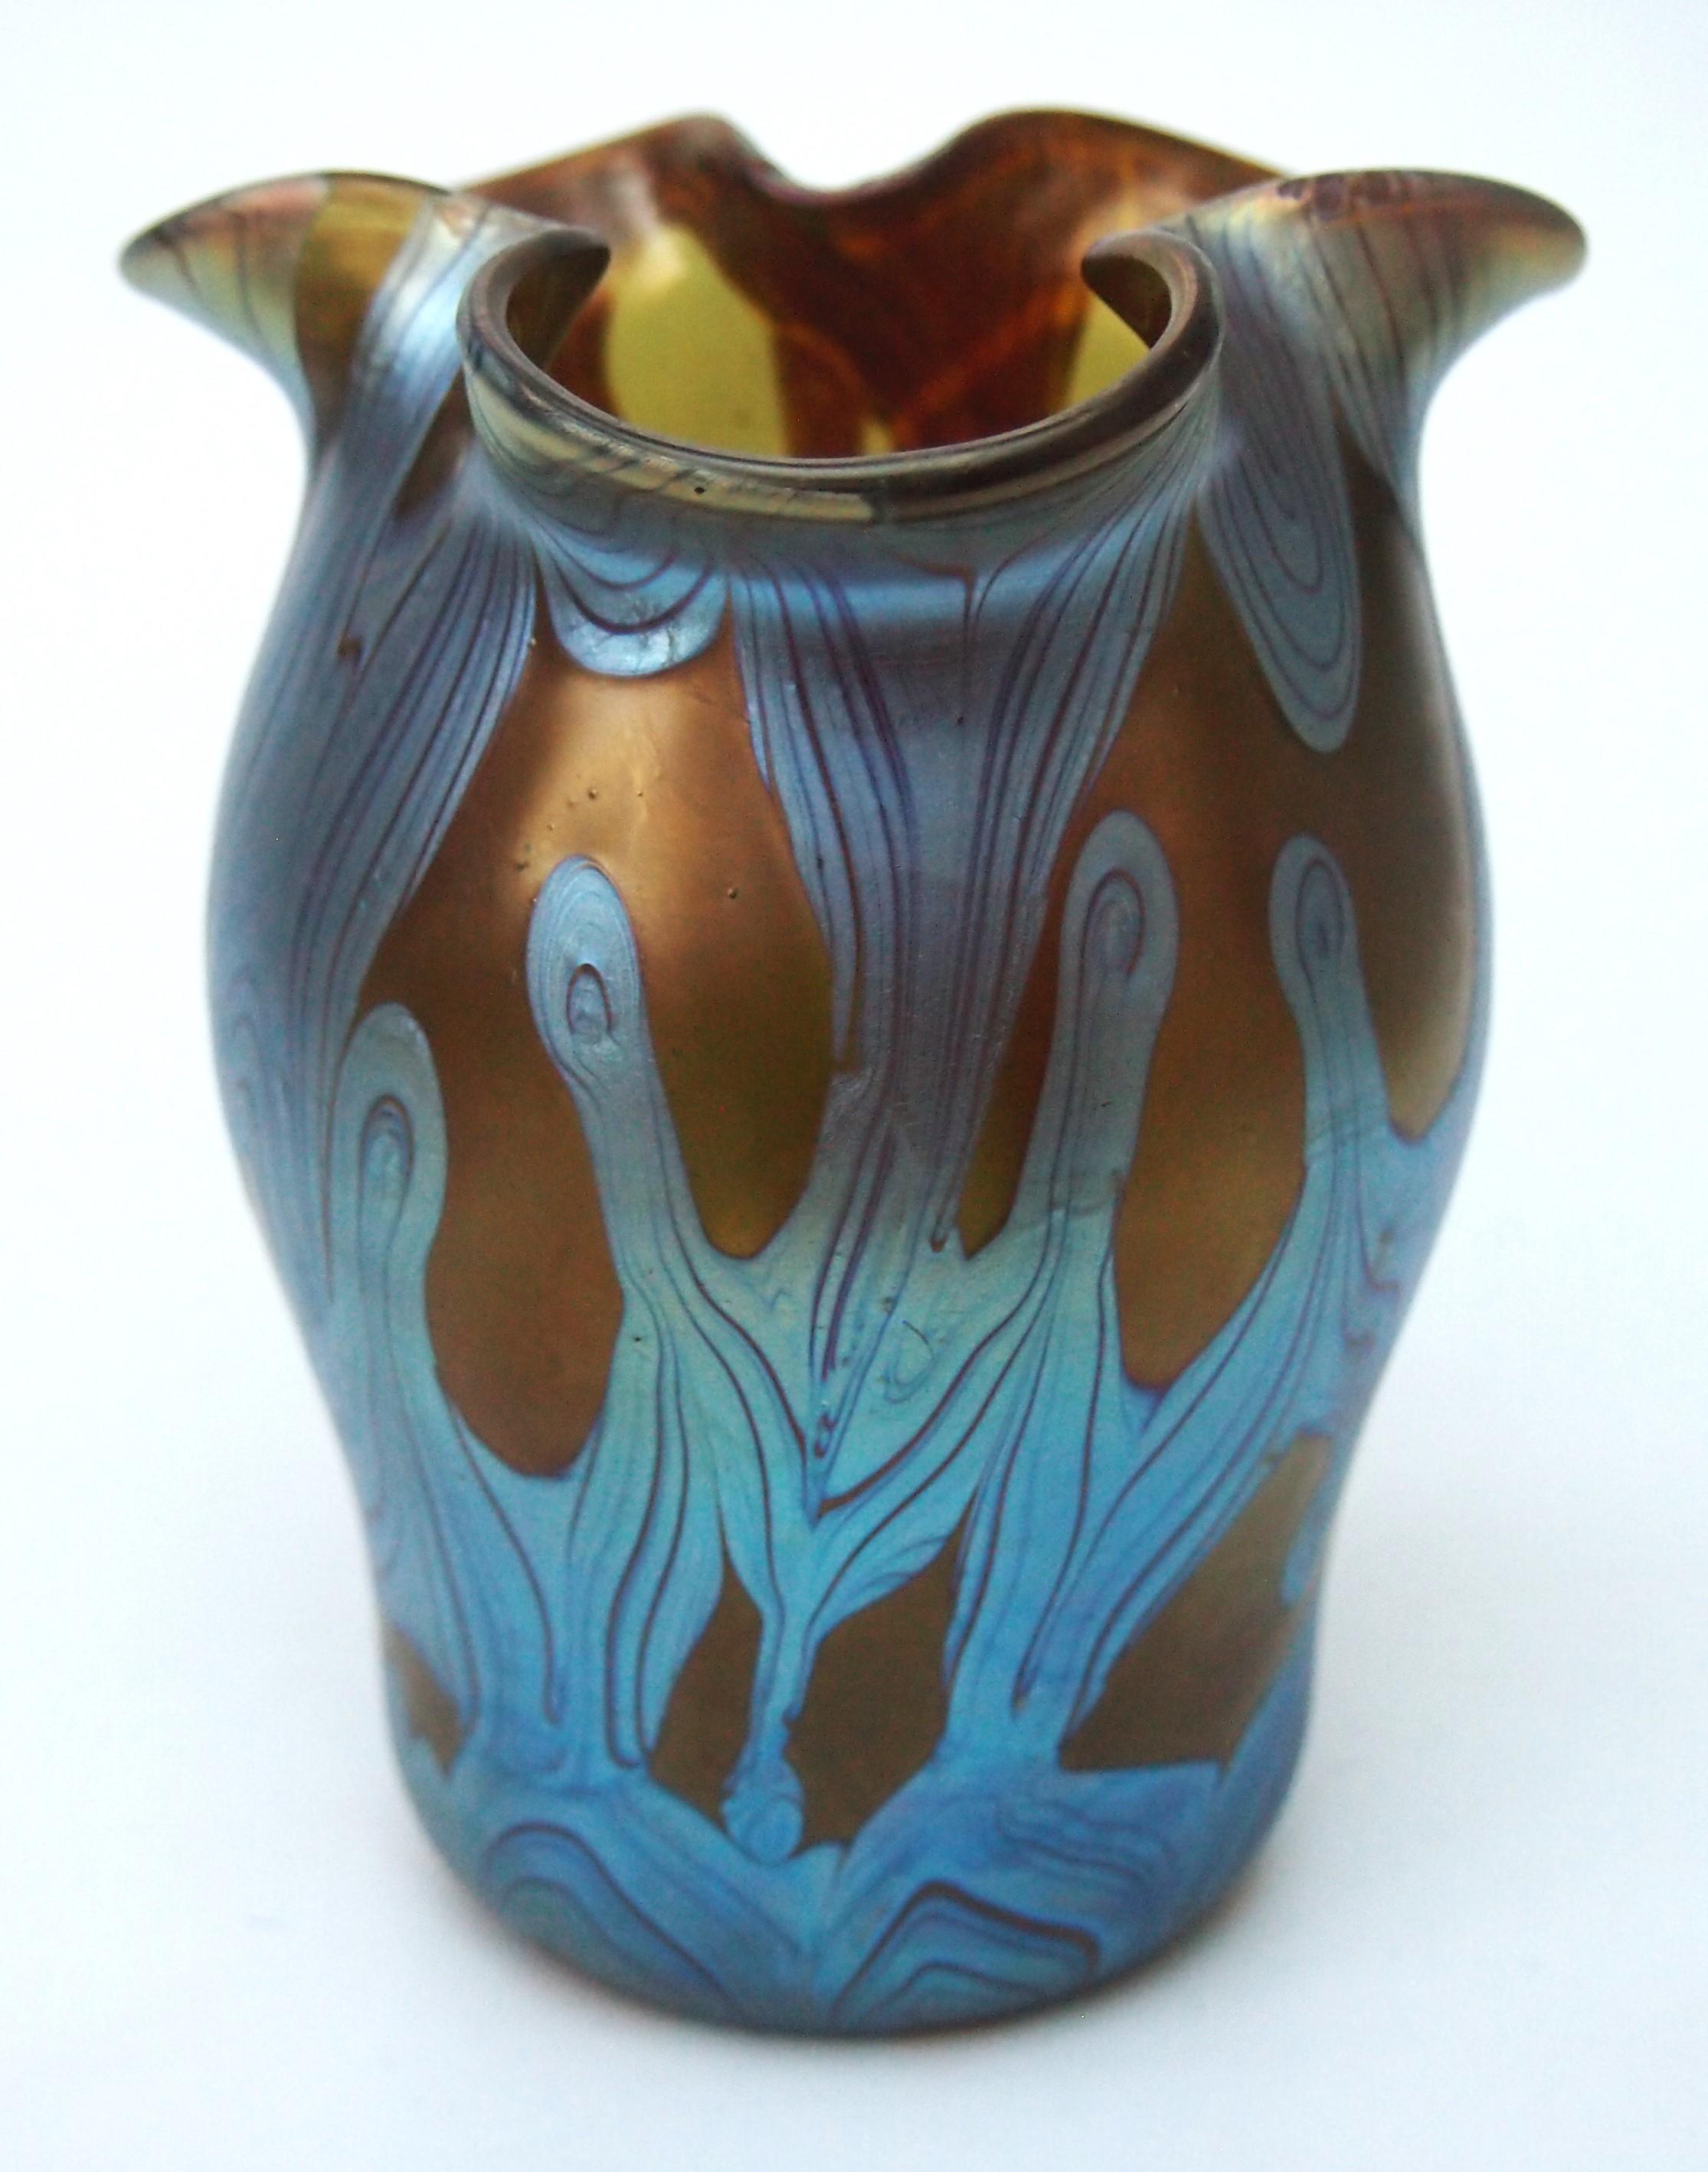 Vase Loetz Phaenomen exceptionnel et entièrement documenté. Cet exemple est documenté comme le motif PG 29 de Phaenomen, la couleur est appelée bronze et il y a une traînée d'argent bleu qui donne un effet de fenêtre. Il est étonnant de constater